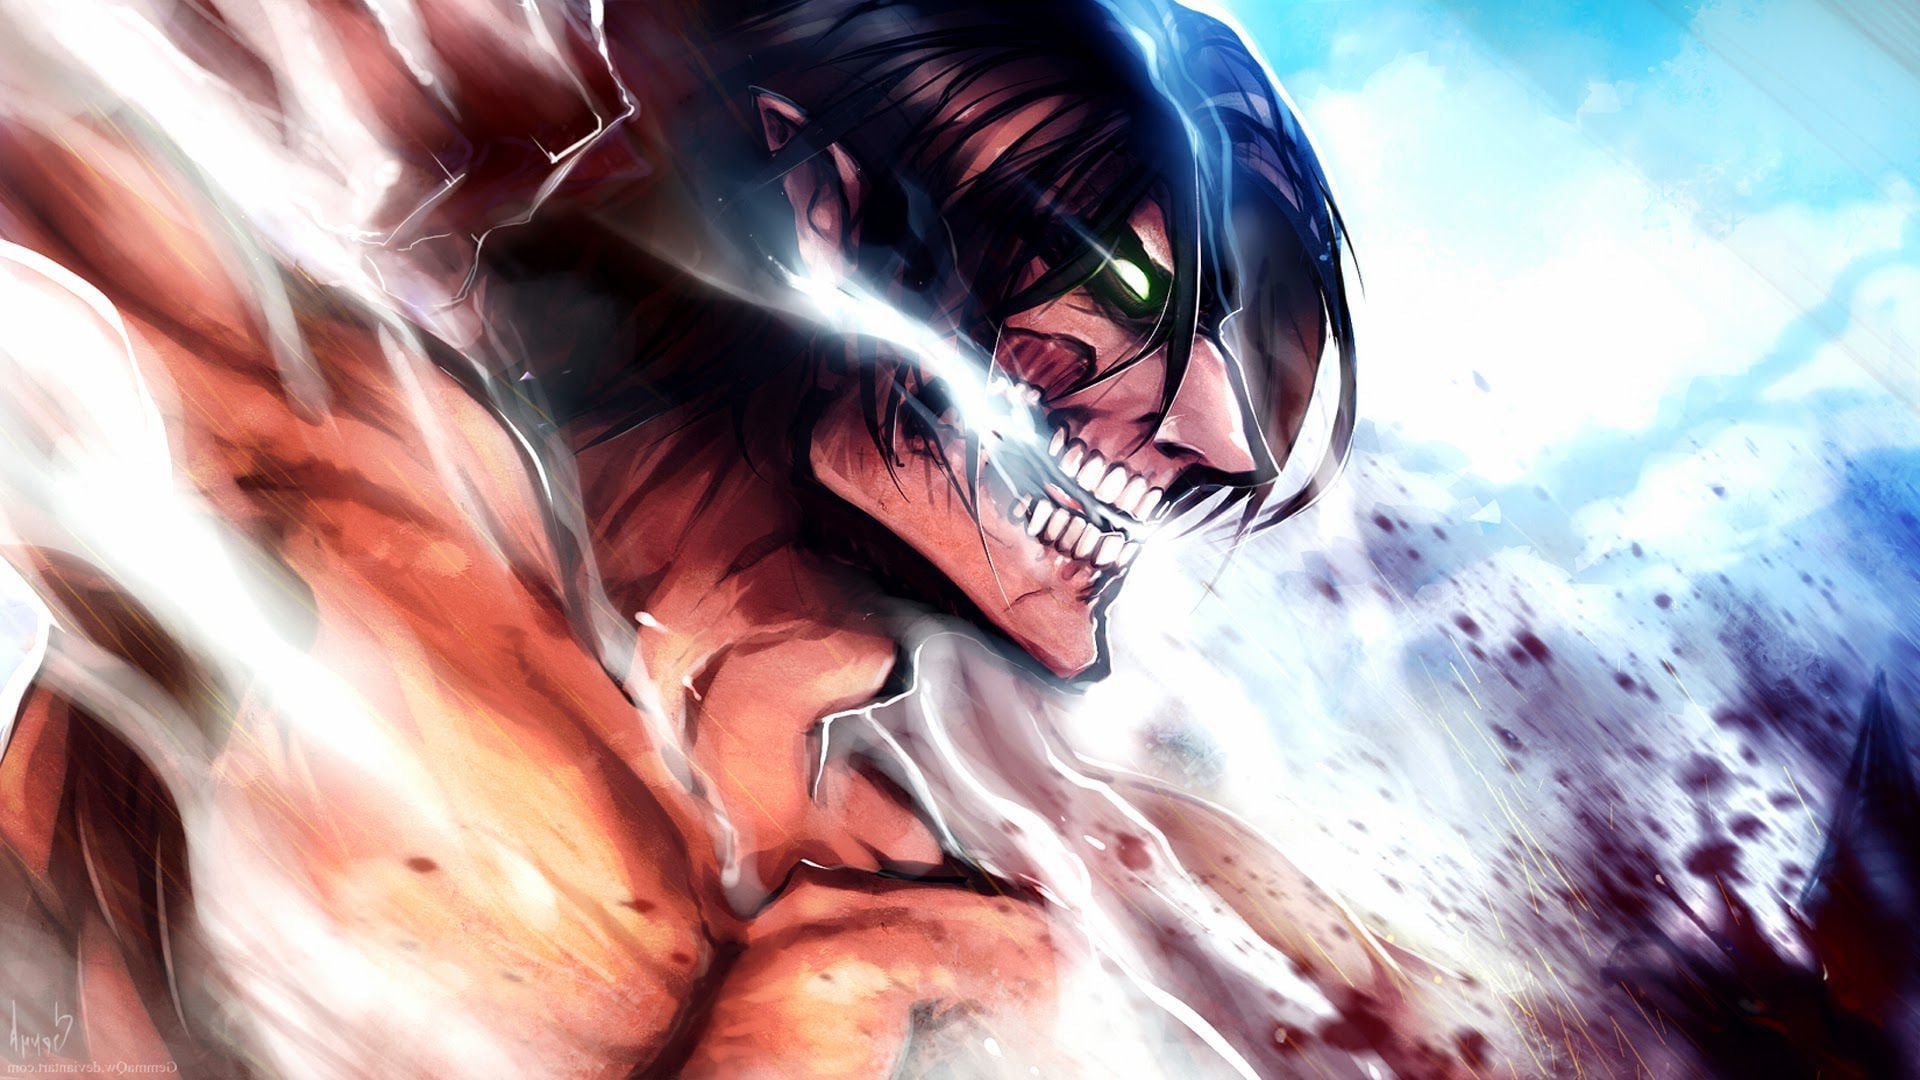 Attack on Titan - Shingeki no Kyojin: O que esperar da 4ª temporada do  anime? - Artesetra - Notícias de Cinema, Tv, Comics, Mangá